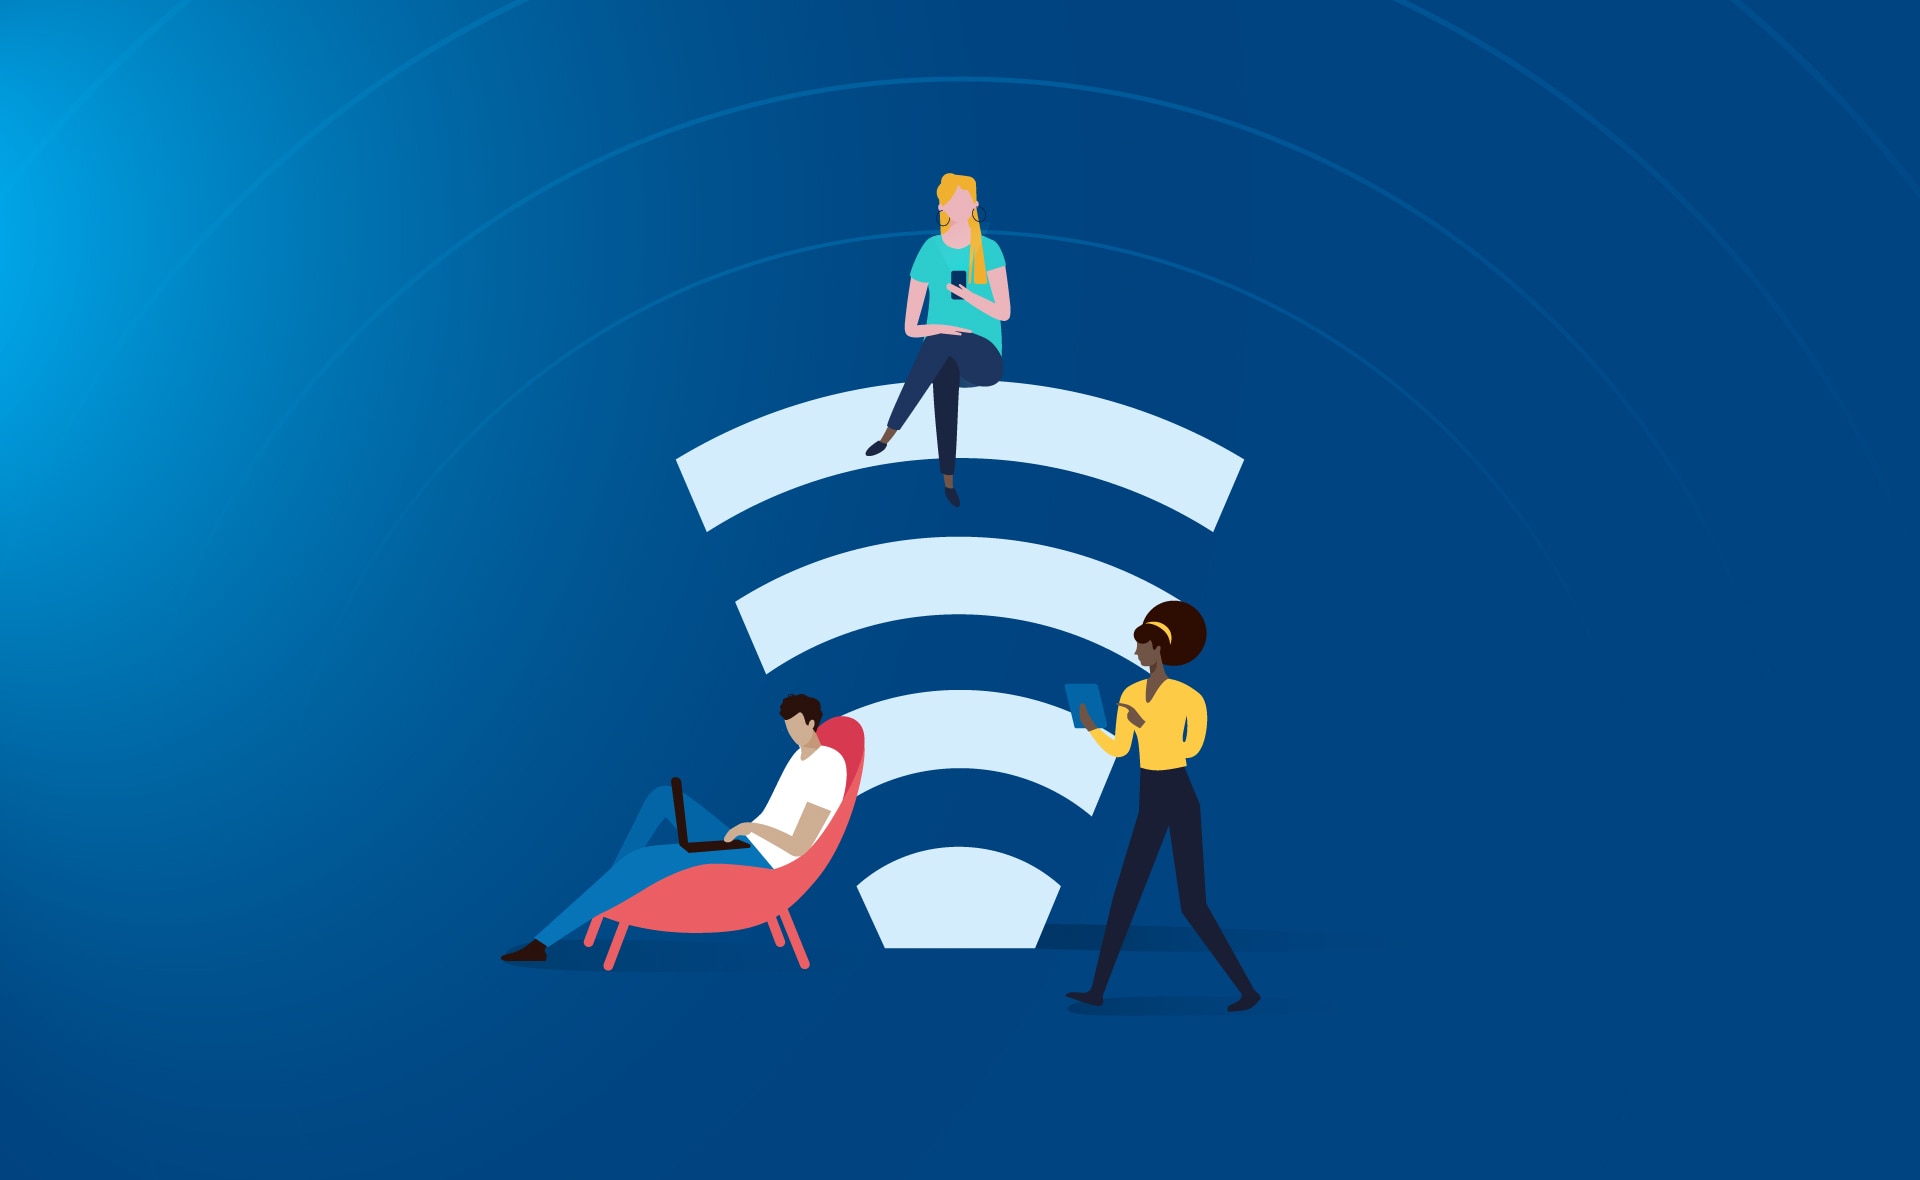 Wifi 7, la próxima conexión inalámbrica